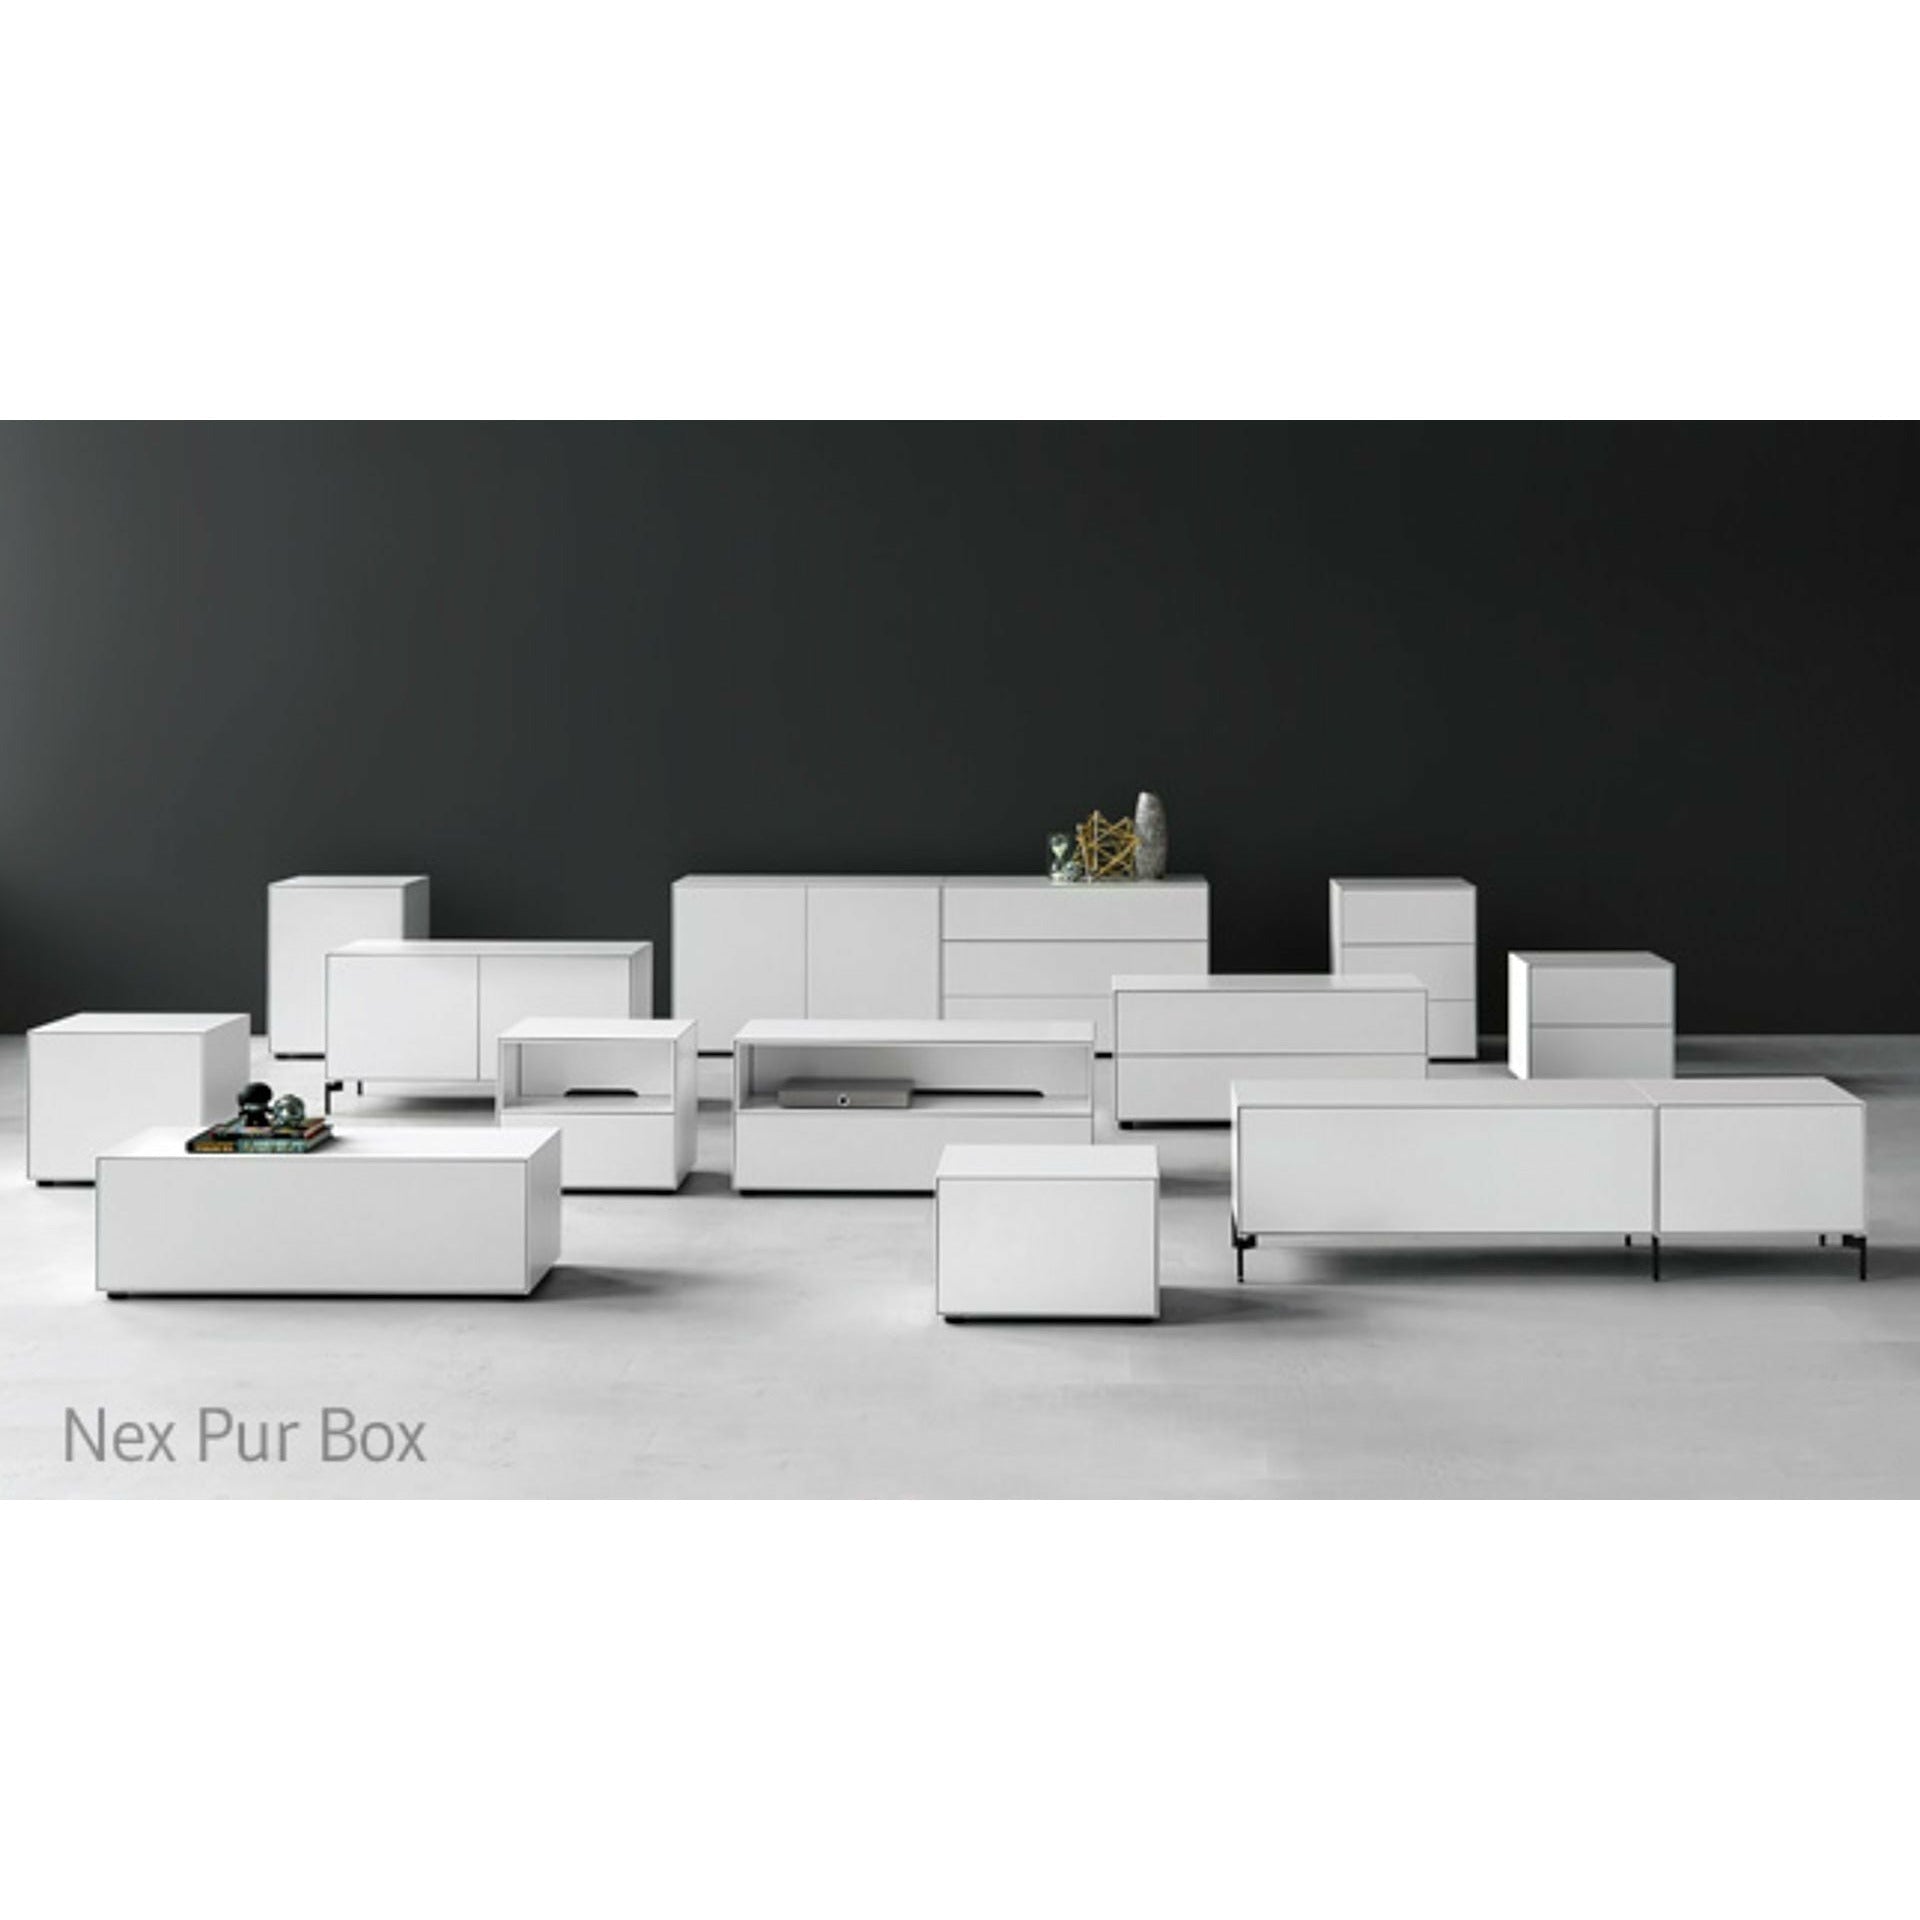 Piure Nex Pur Box Flap Hx W 37,5x180 cm, 1 półka